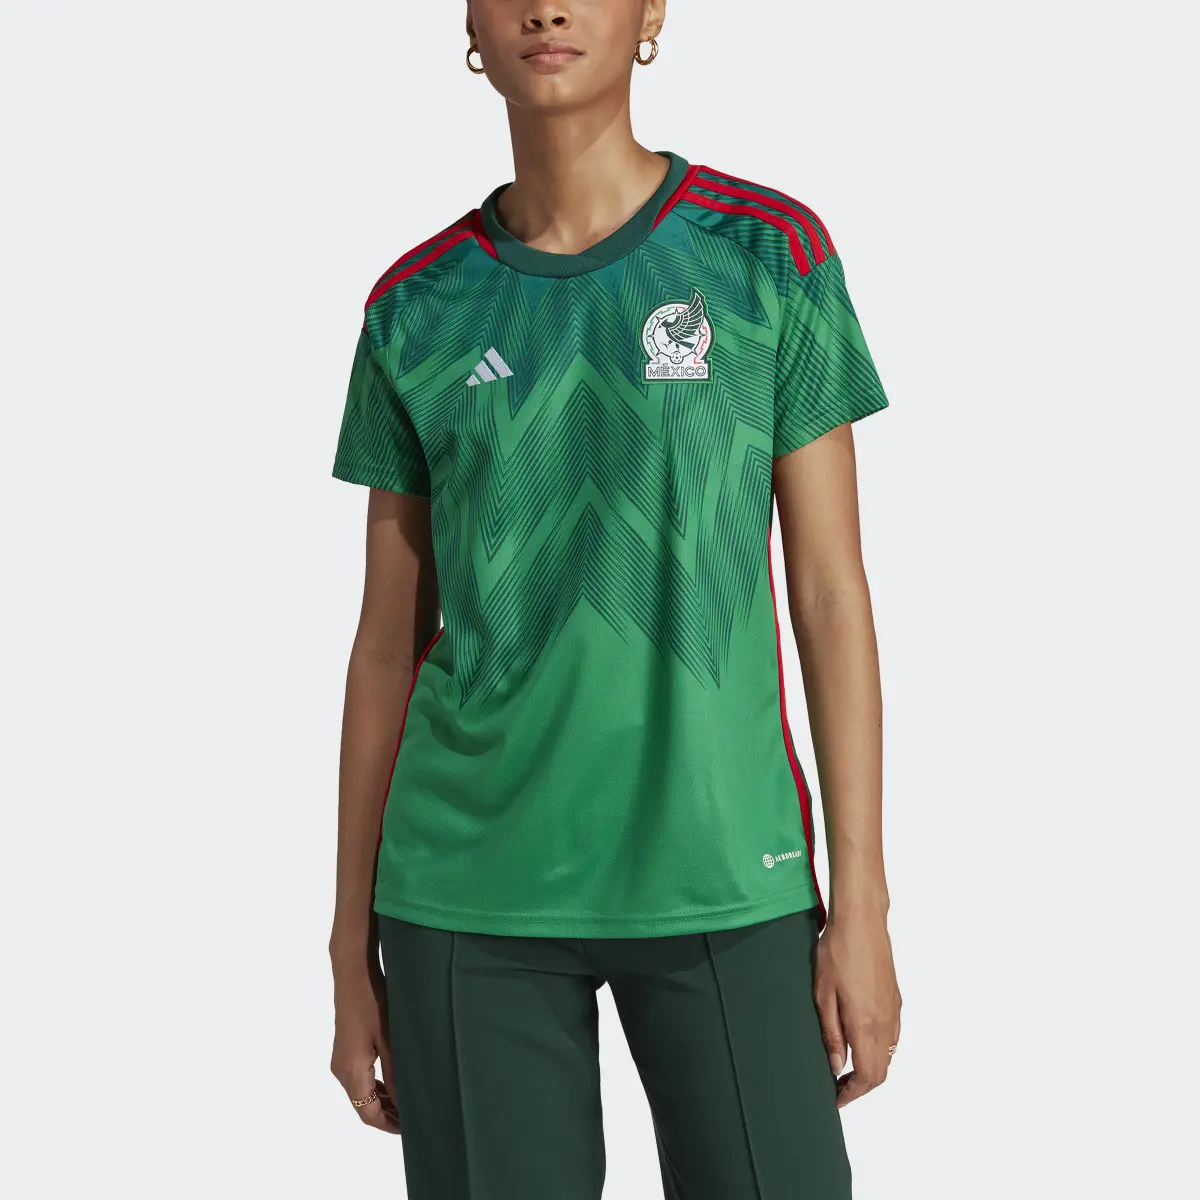 Adidas Jersey Local Mujer Selección Nacional de México. 1